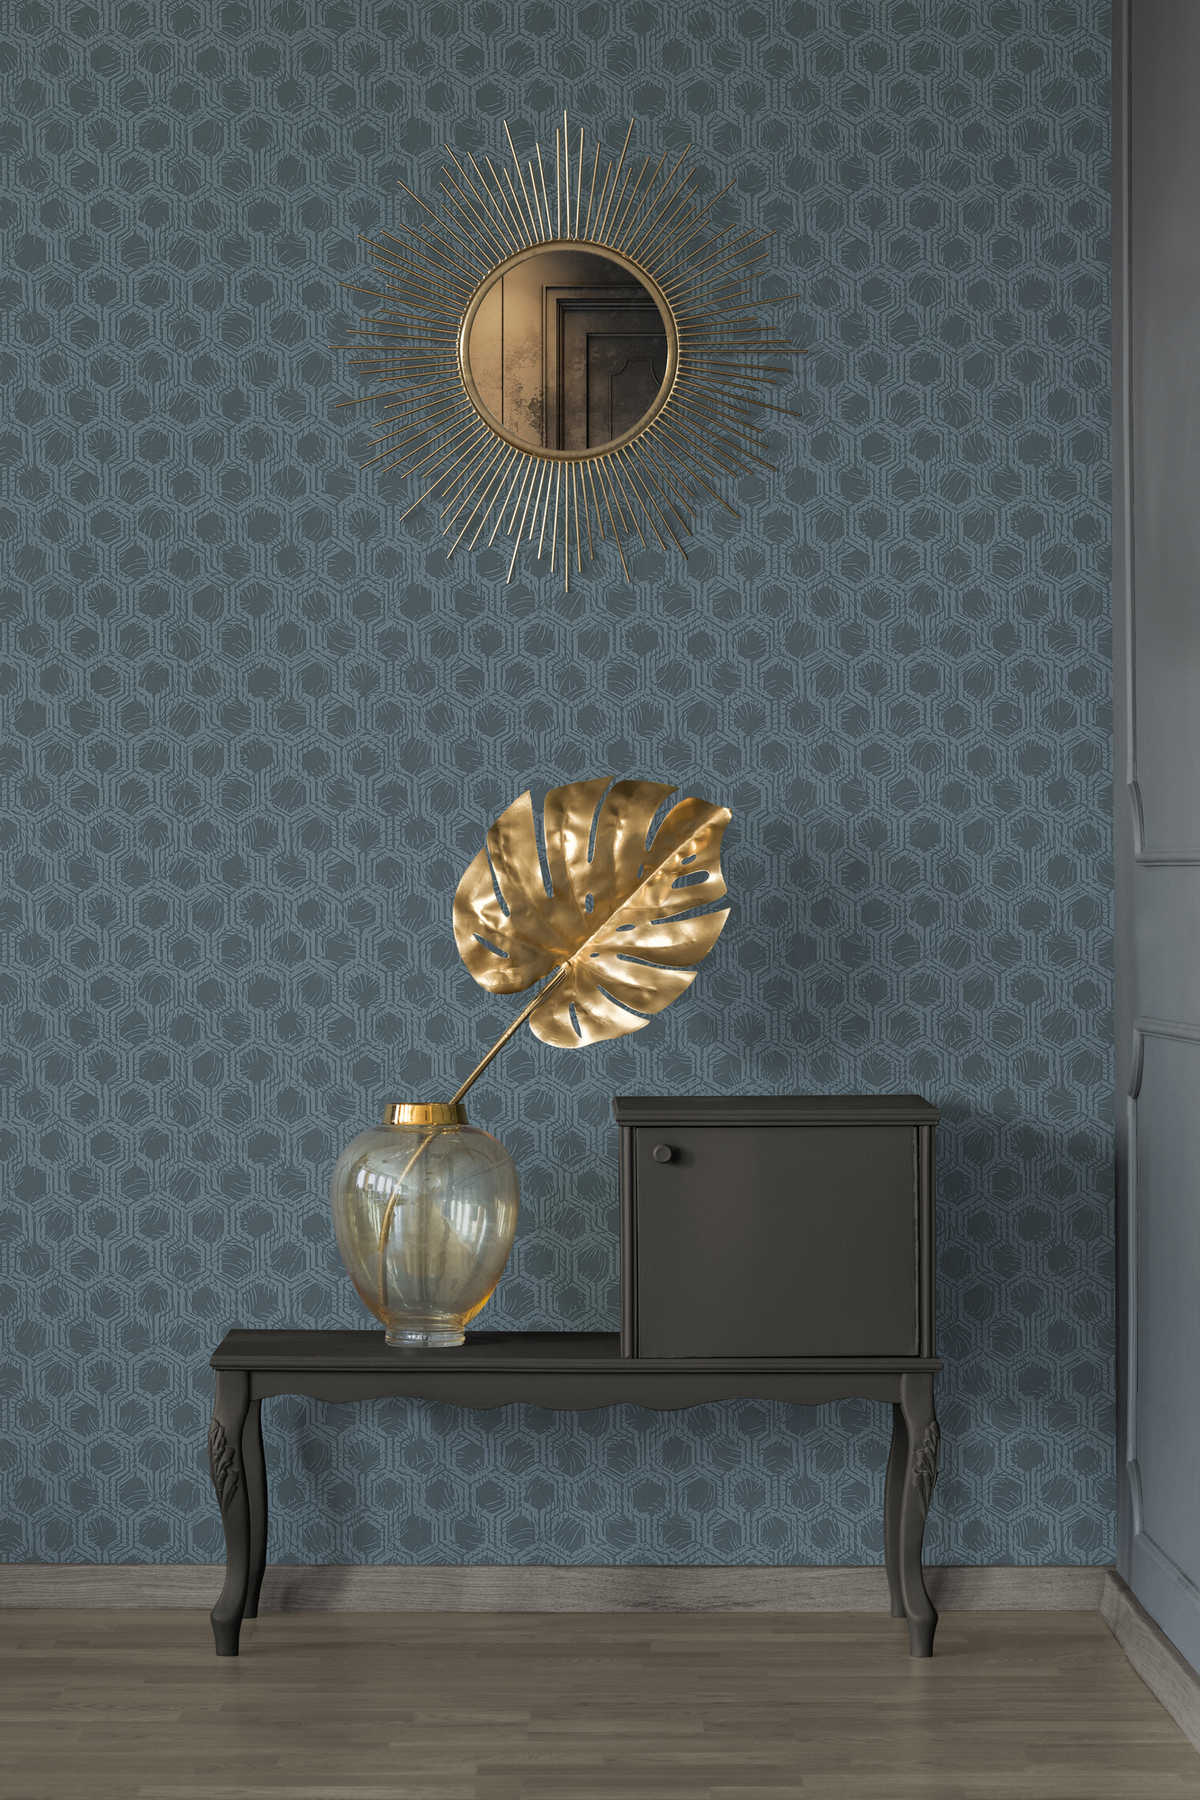             Mustertapete mit Hexagon Muster im Ethno Stil – Blau, Metallic
        